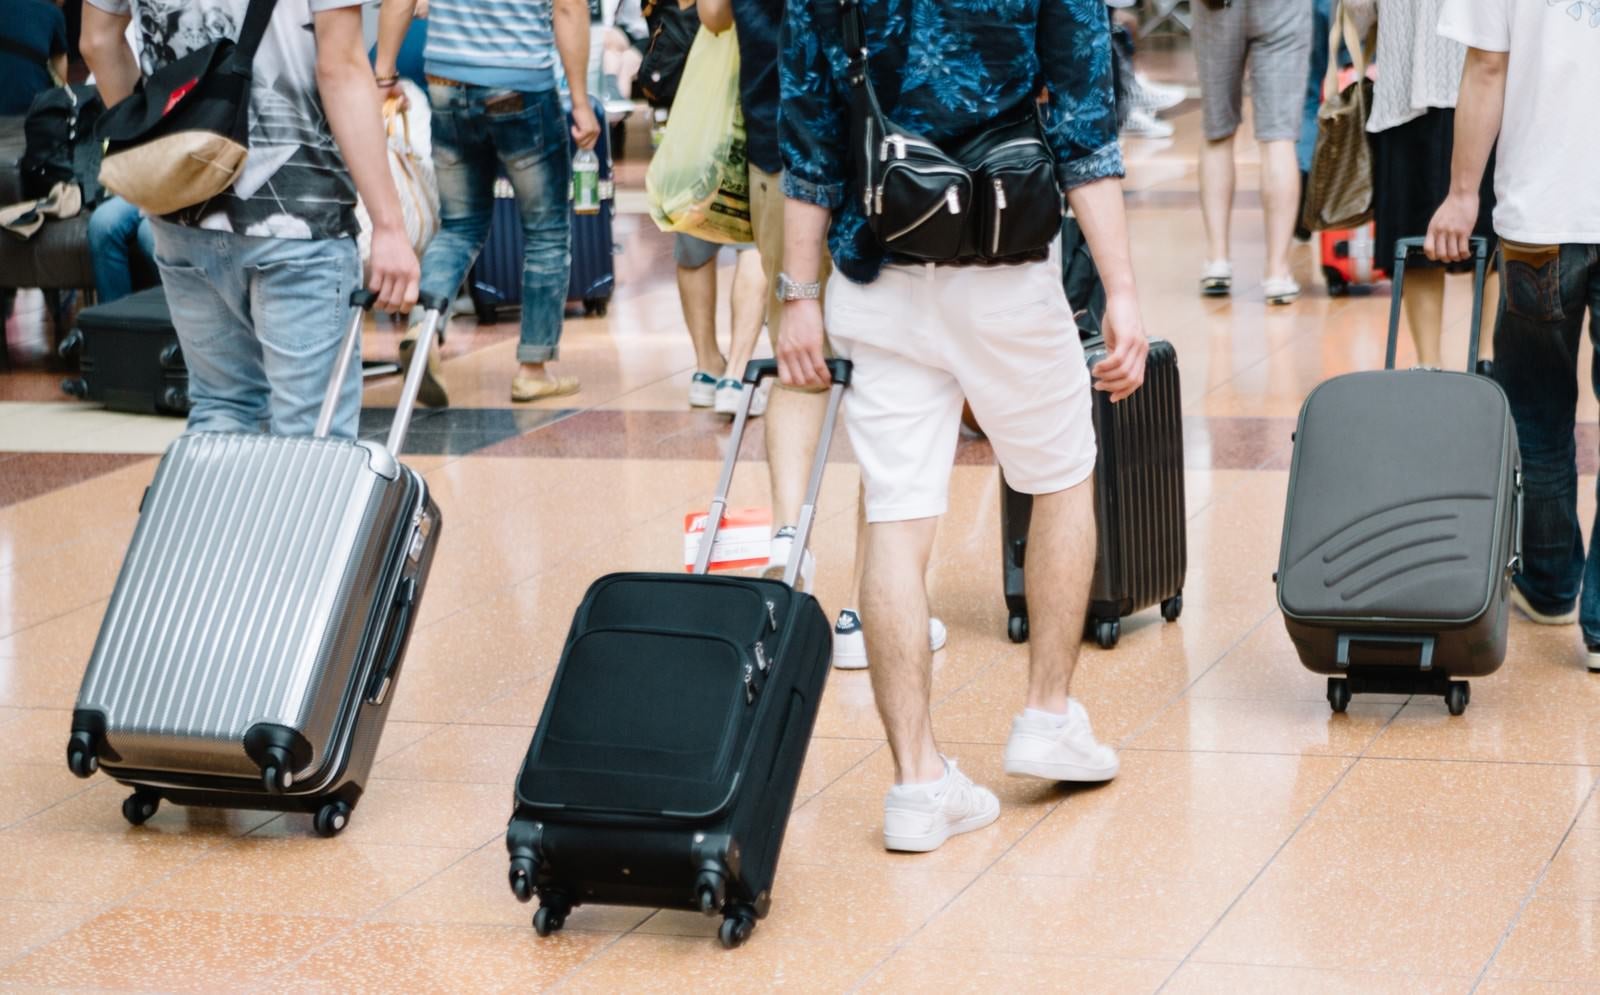 「空港でキャリーバッグを持った観光客」の写真